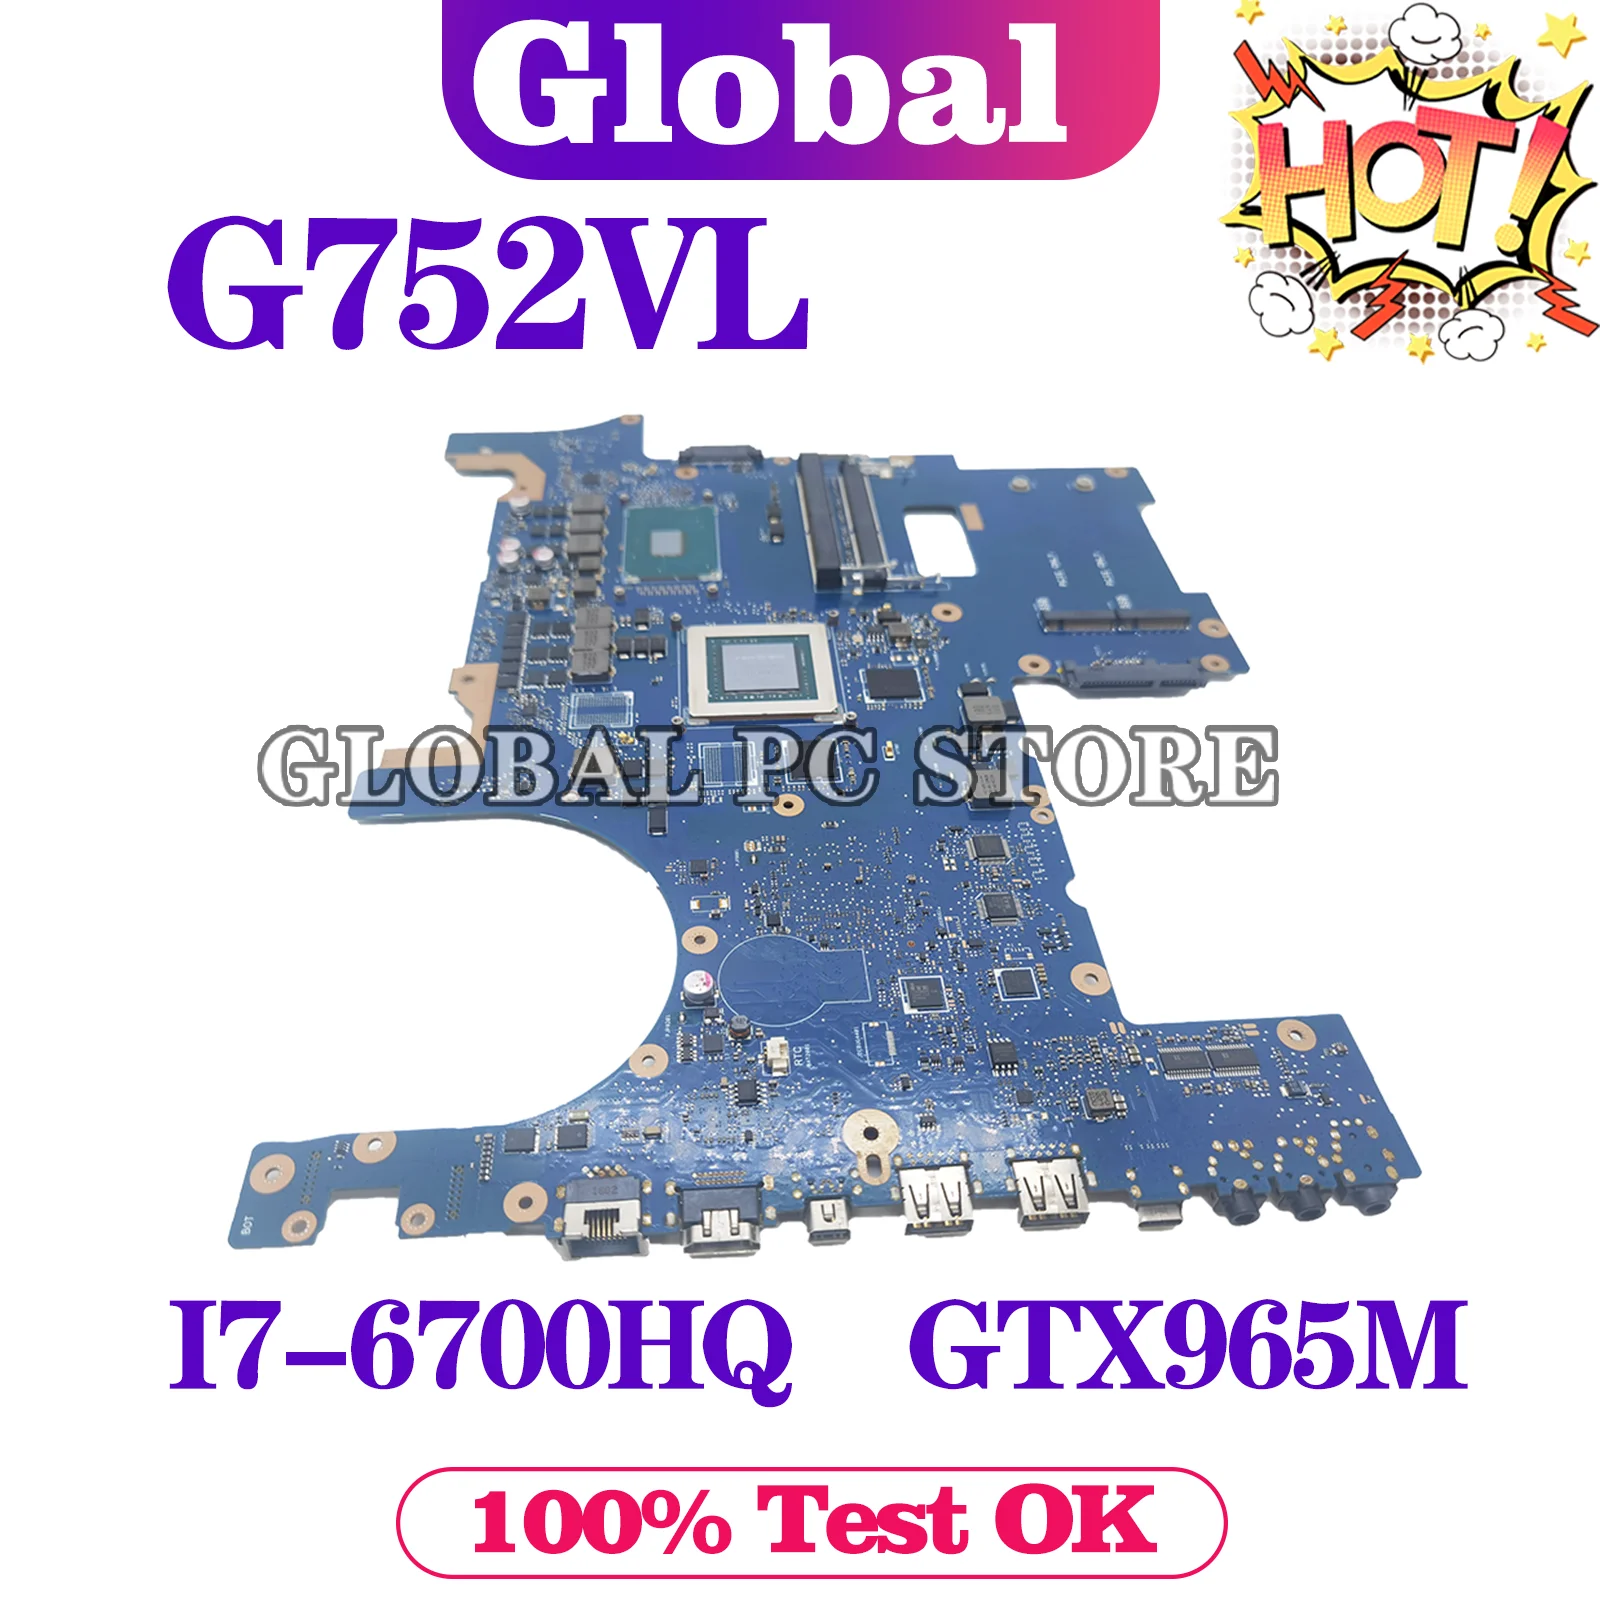 KEFU-placa base para ordenador portátil, placa base para ASUS G752V G752VT G752VL, I7-6700HQ CPU GTX970M/3G GTX965M/2G GTX980M/4G